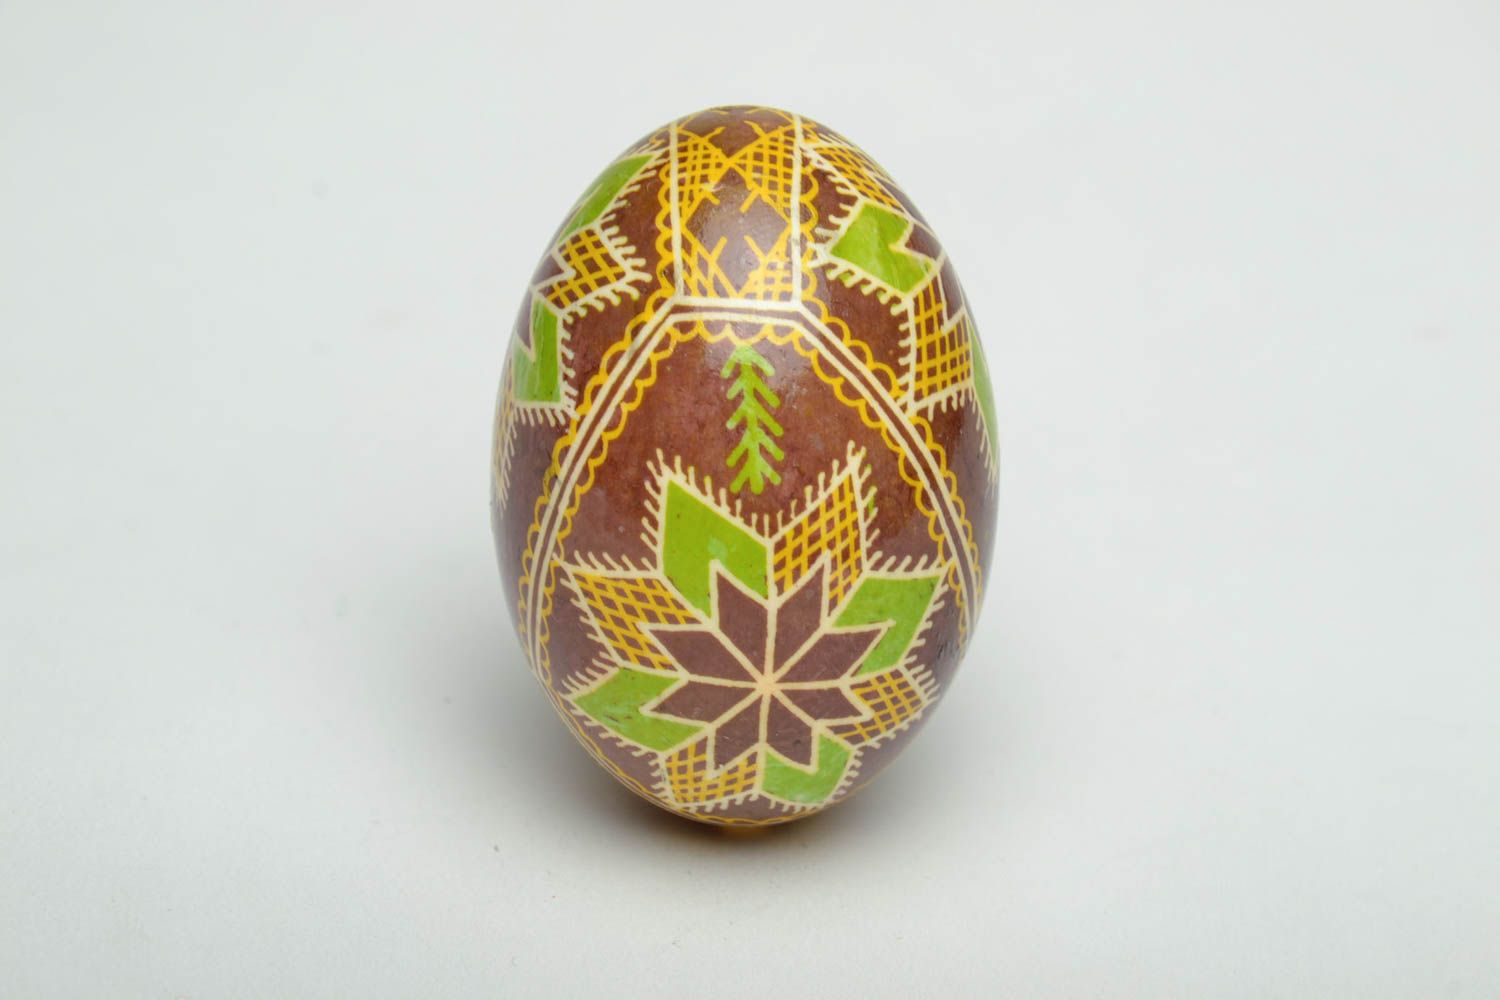 Oeuf de Pâques fait main avec ornements ethniques peints de colorants d'aniline photo 2